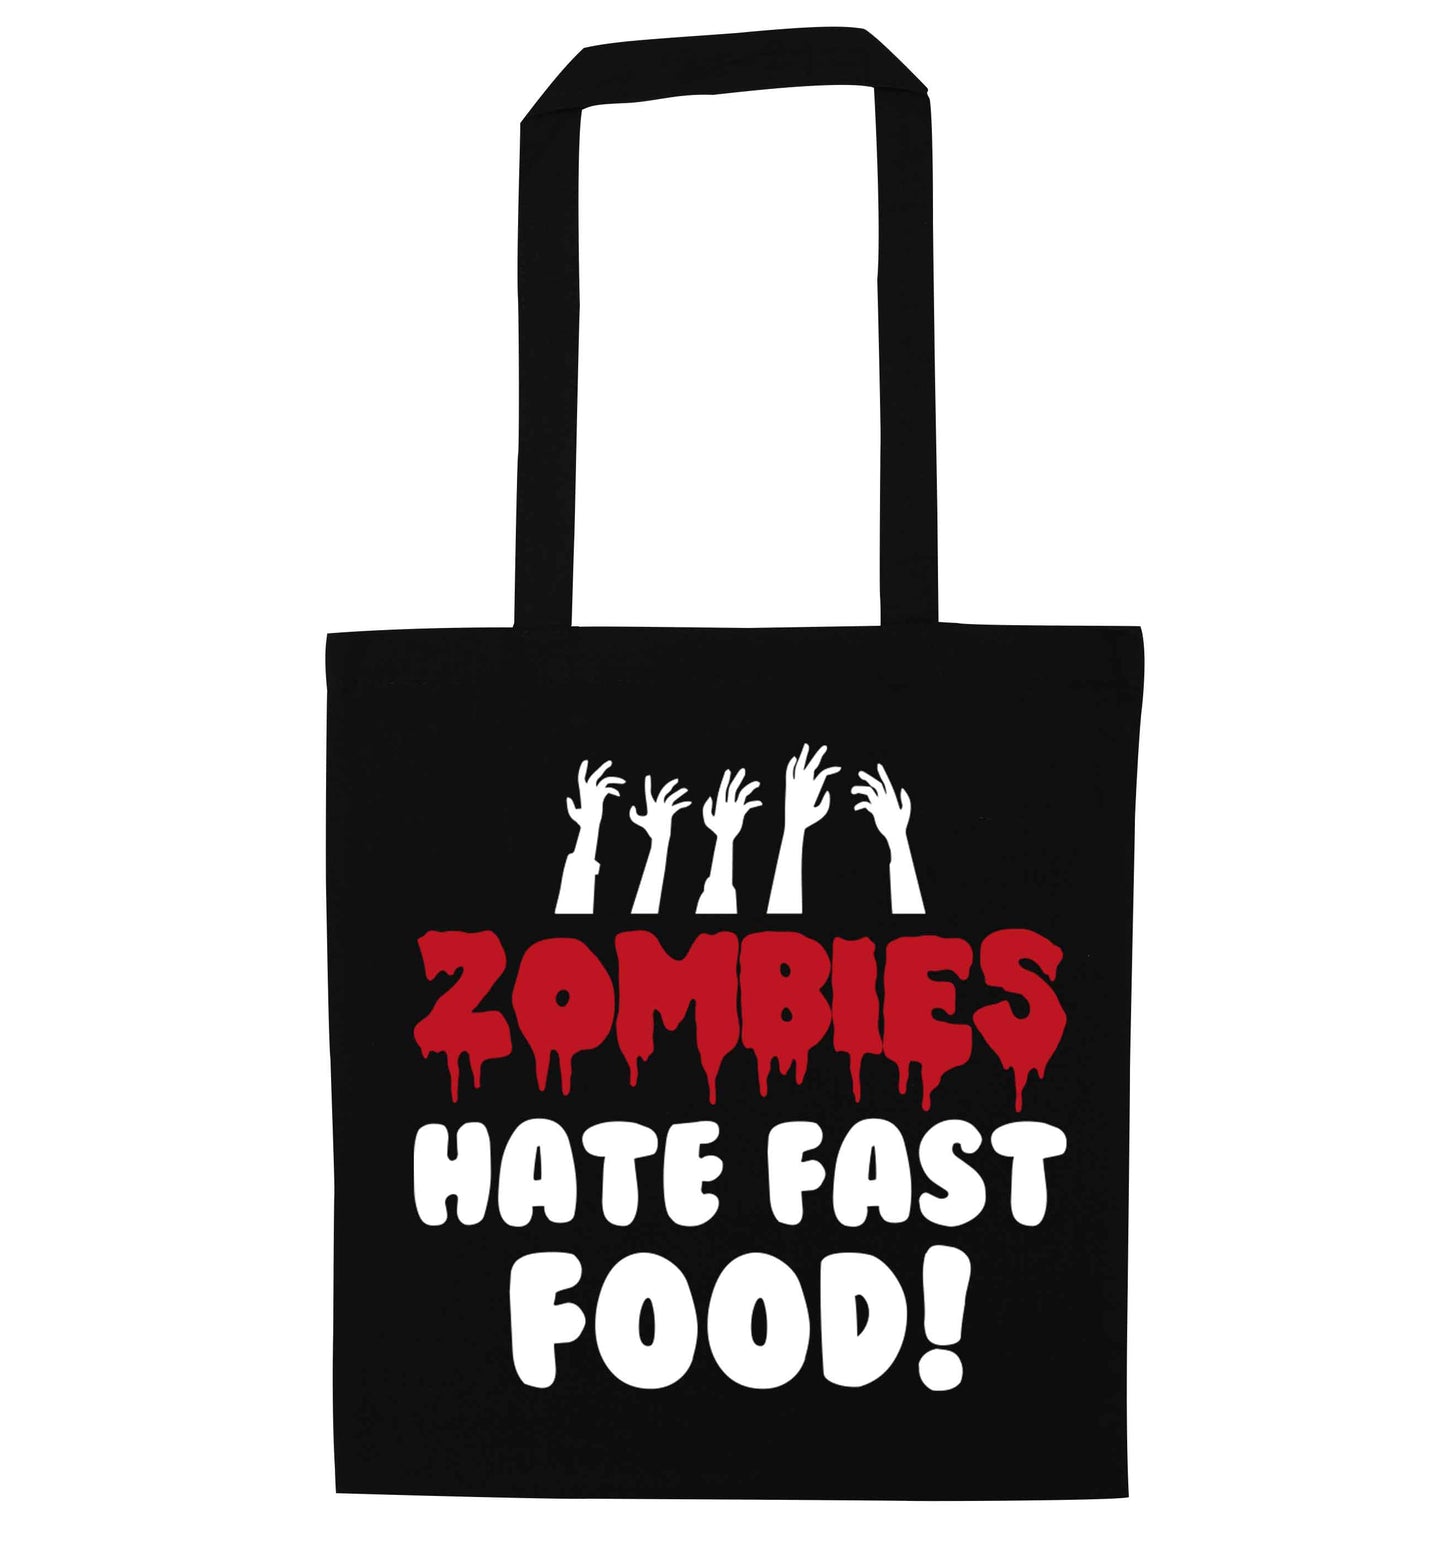 Zombies hate fast food black tote bag